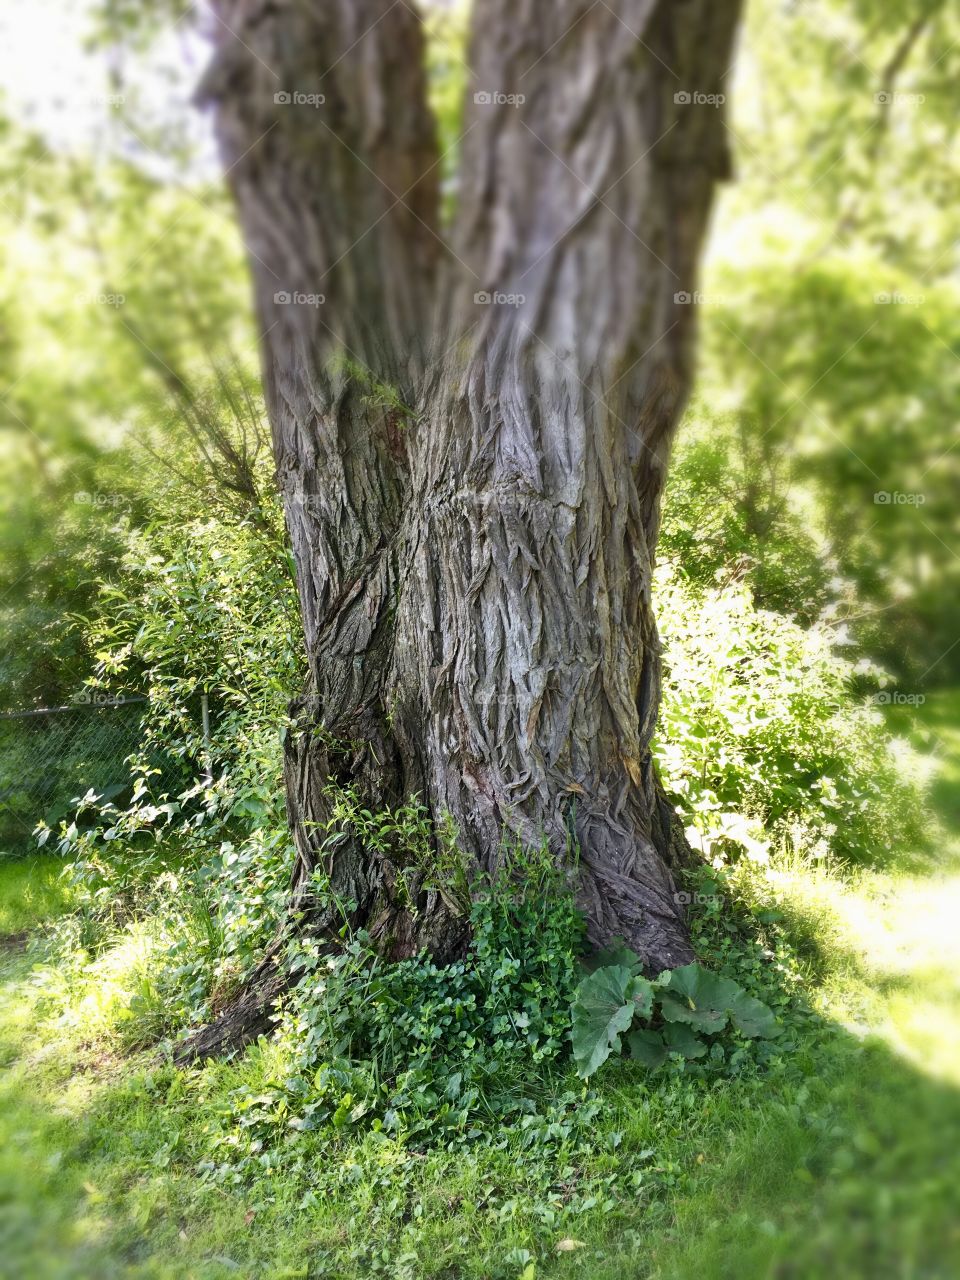 Fairy tale tree 